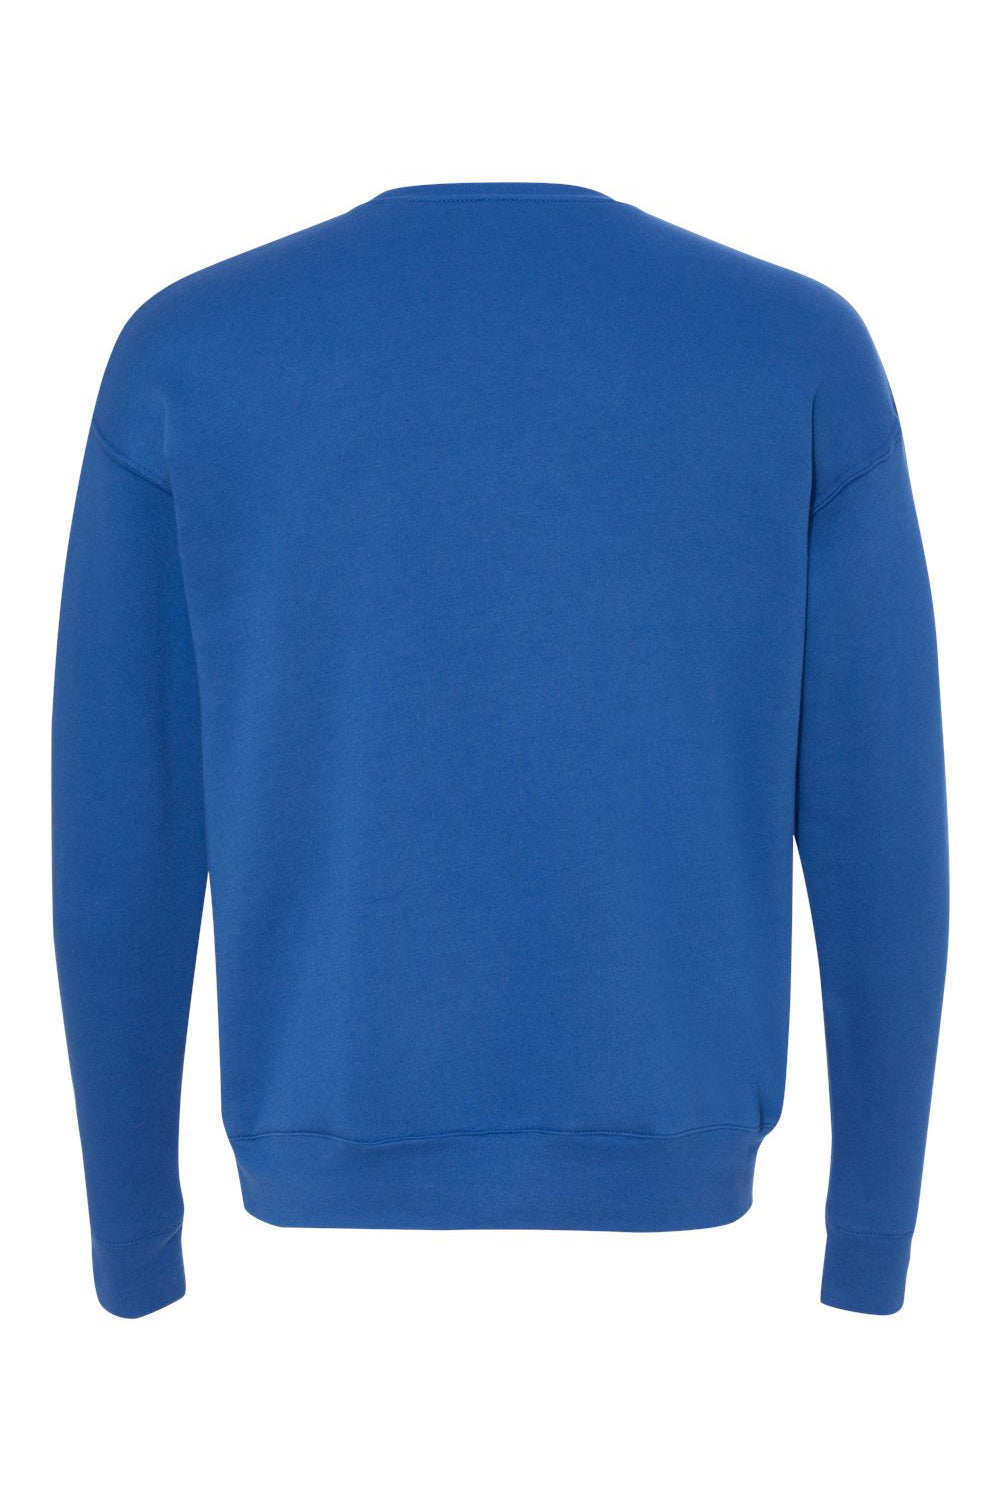 Bella + Canvas BC3945/3945 Mens Fleece Crewneck Sweatshirt True Royal Blue Flat Back